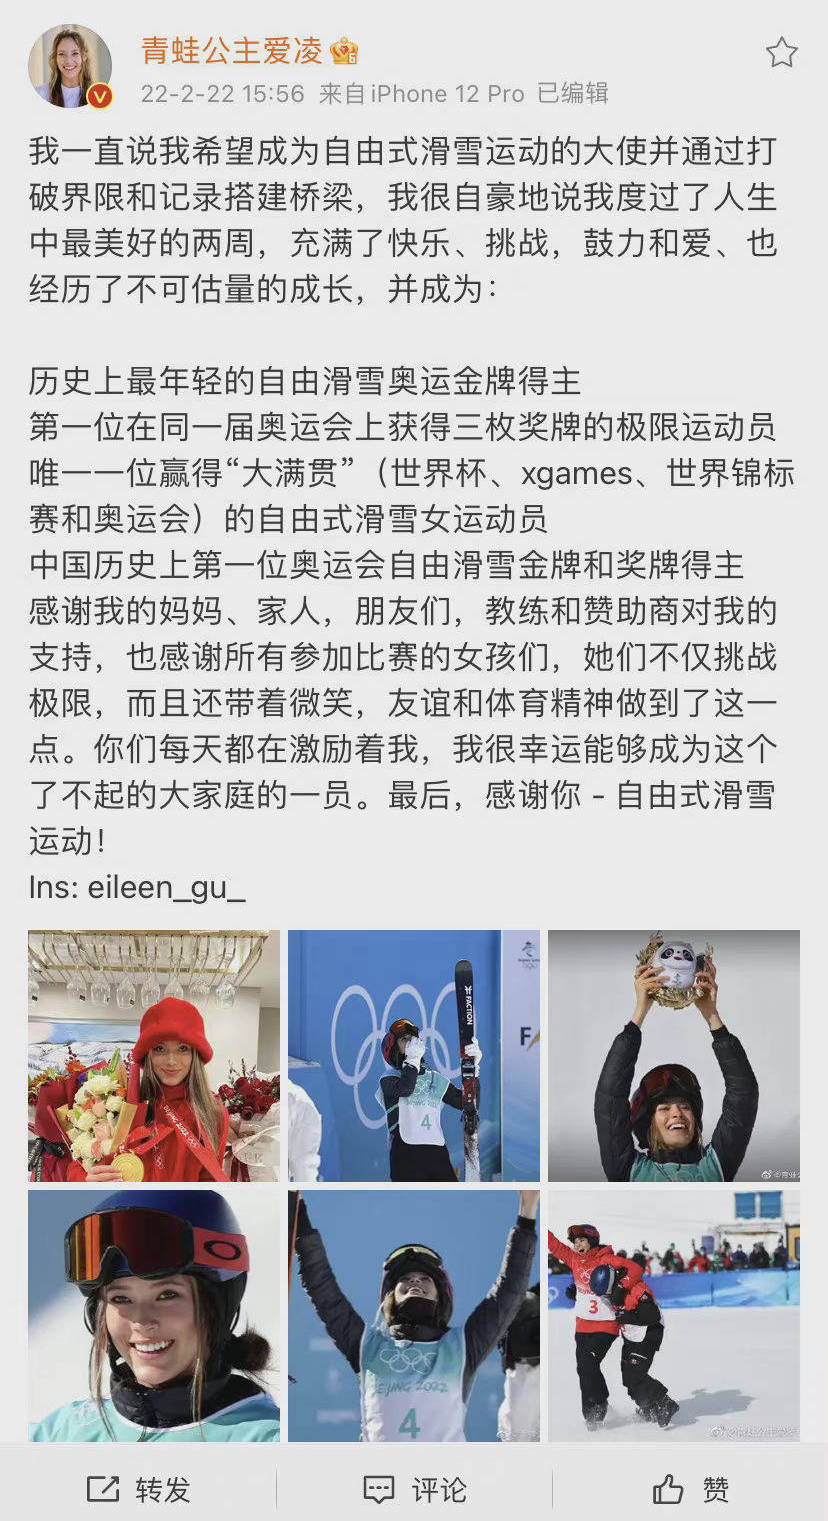 谷爱凌发文告别北京冬奥会:我度过了人生中最美好的两周